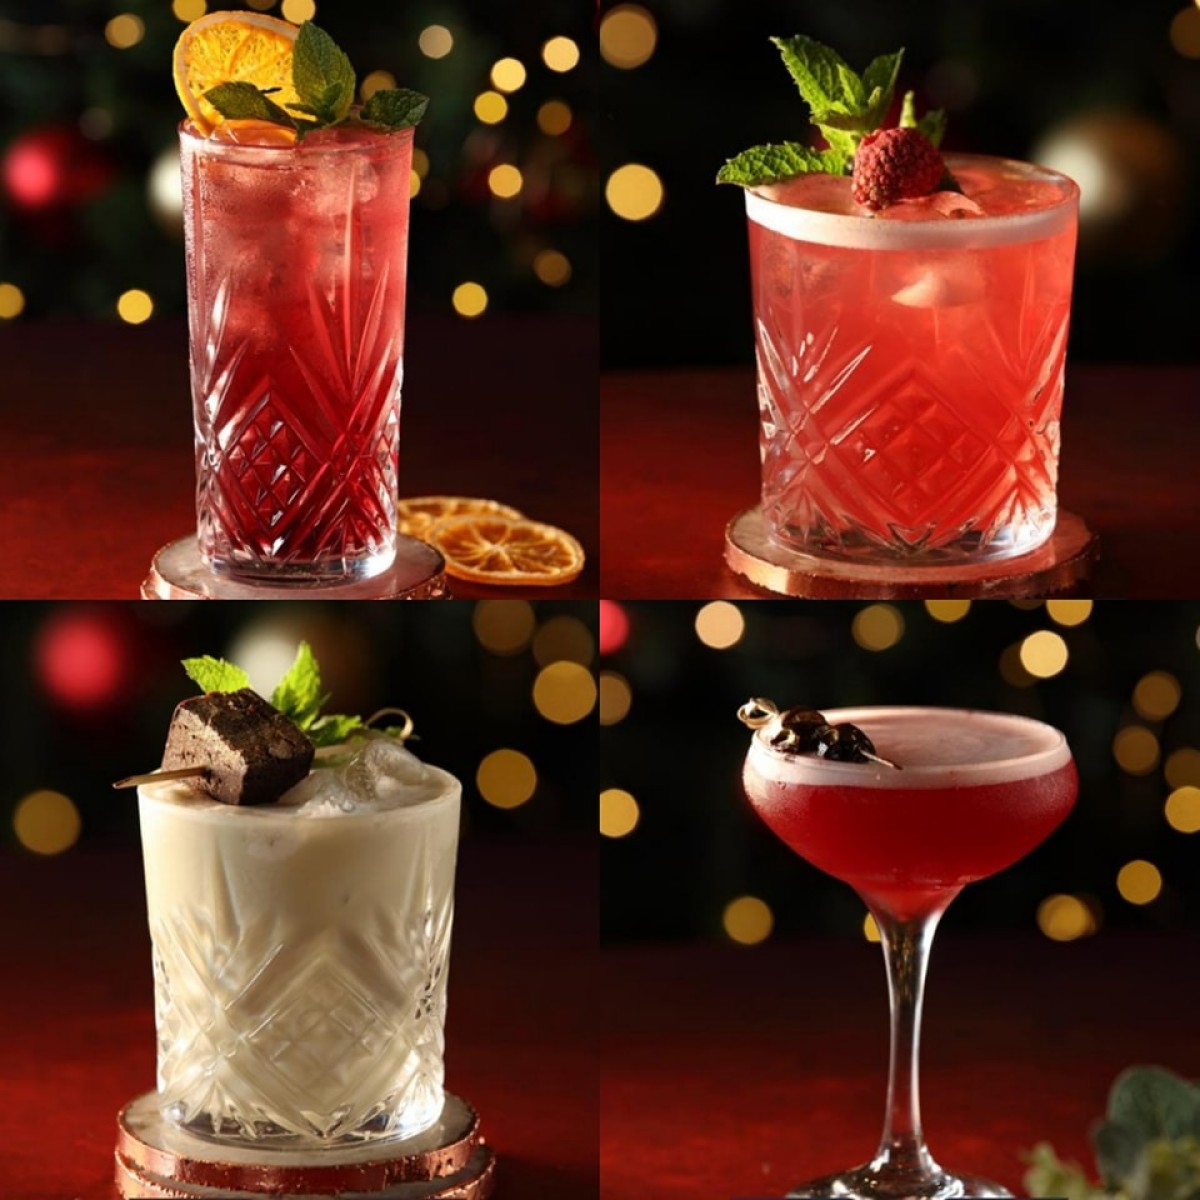 Miller & Carter's Christmas Cocktails